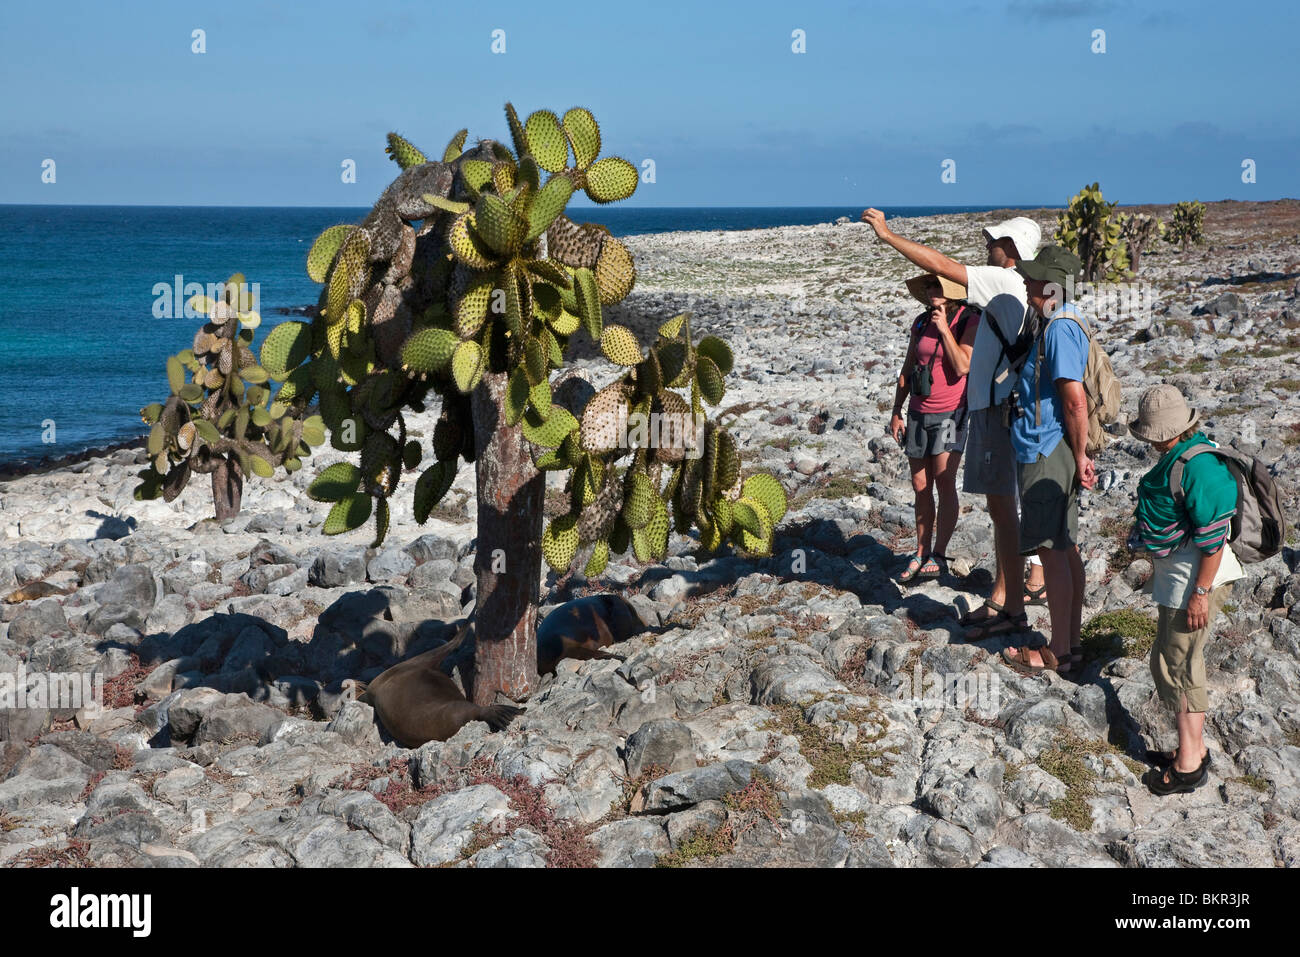 Isole Galapagos, South Plaza island, Galapagos i leoni di mare riposo sotto un enorme albero di cactus. Foto Stock